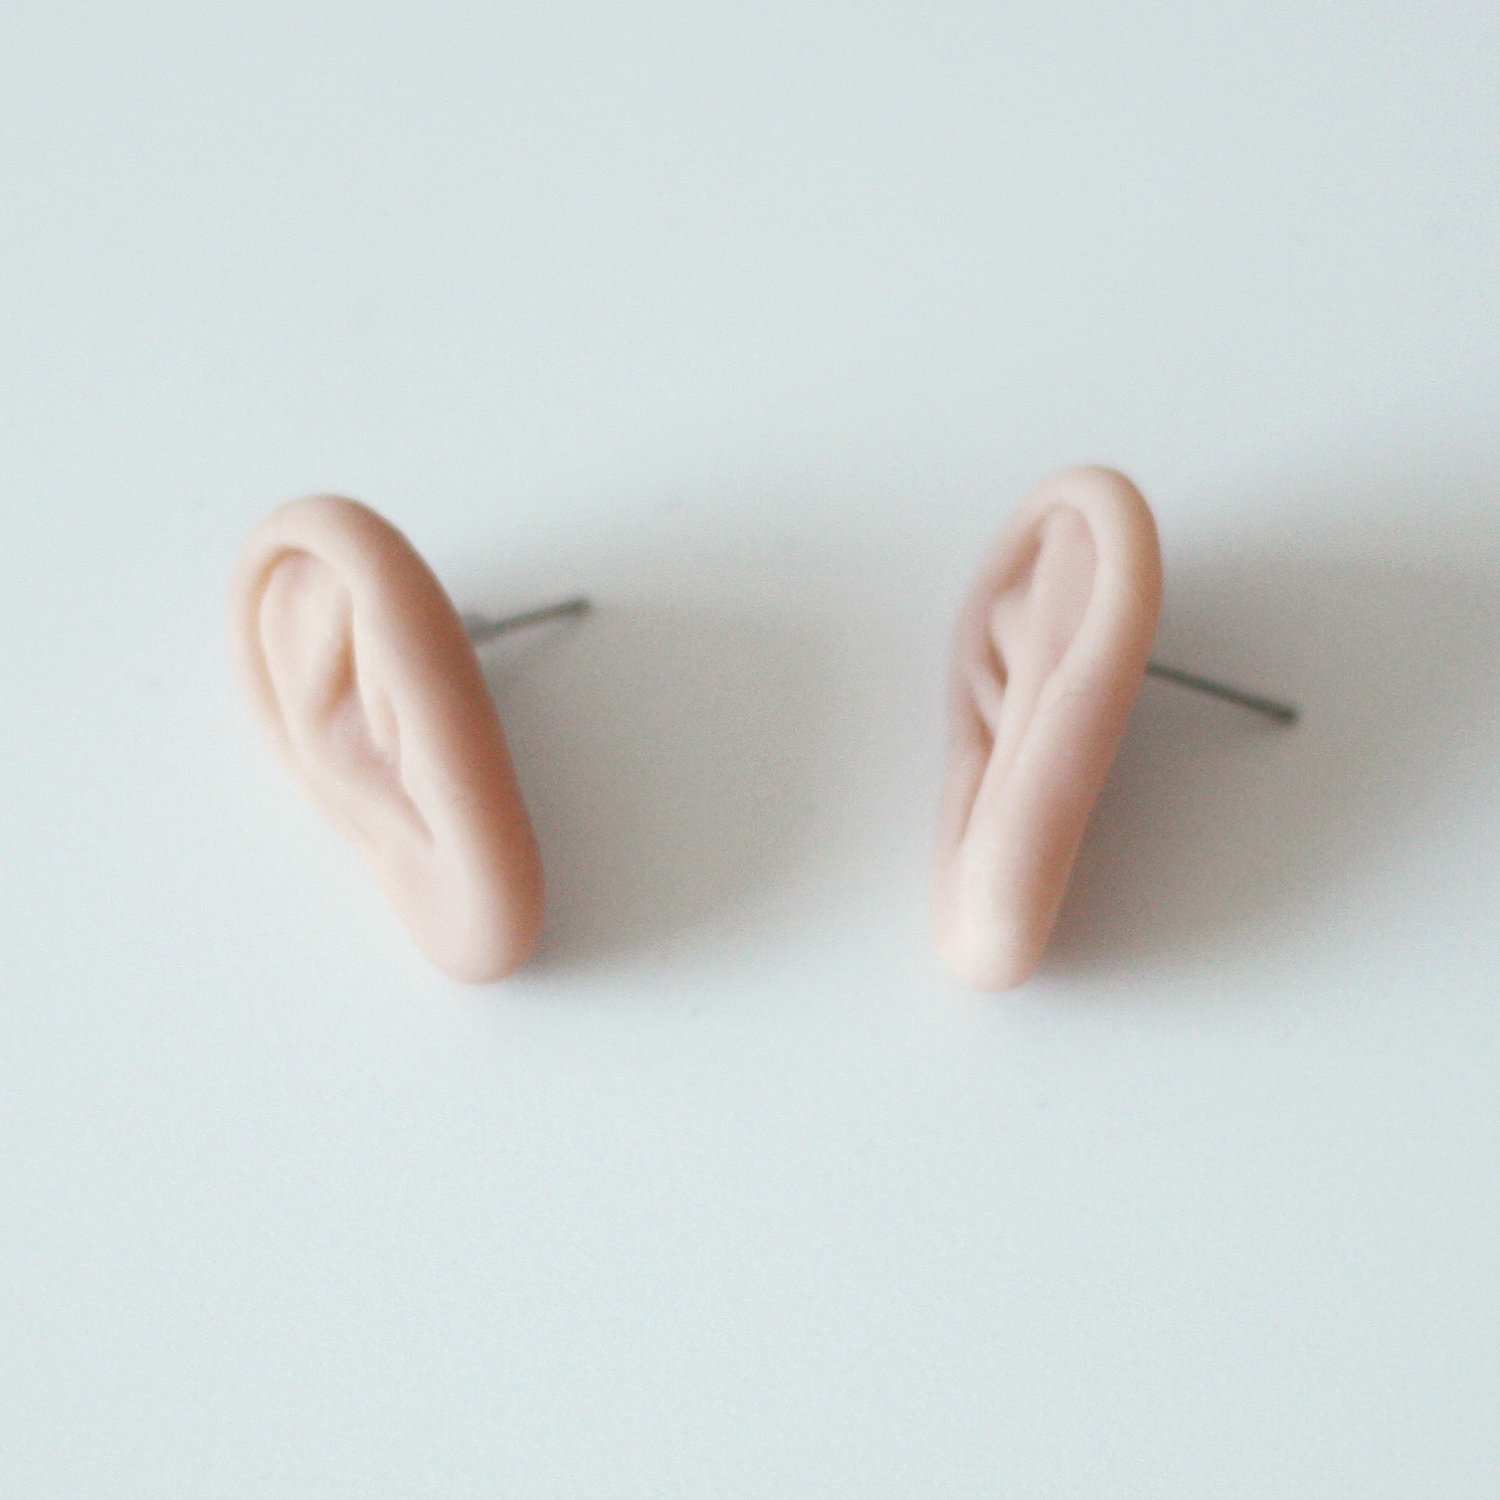 Ear shaped earrings